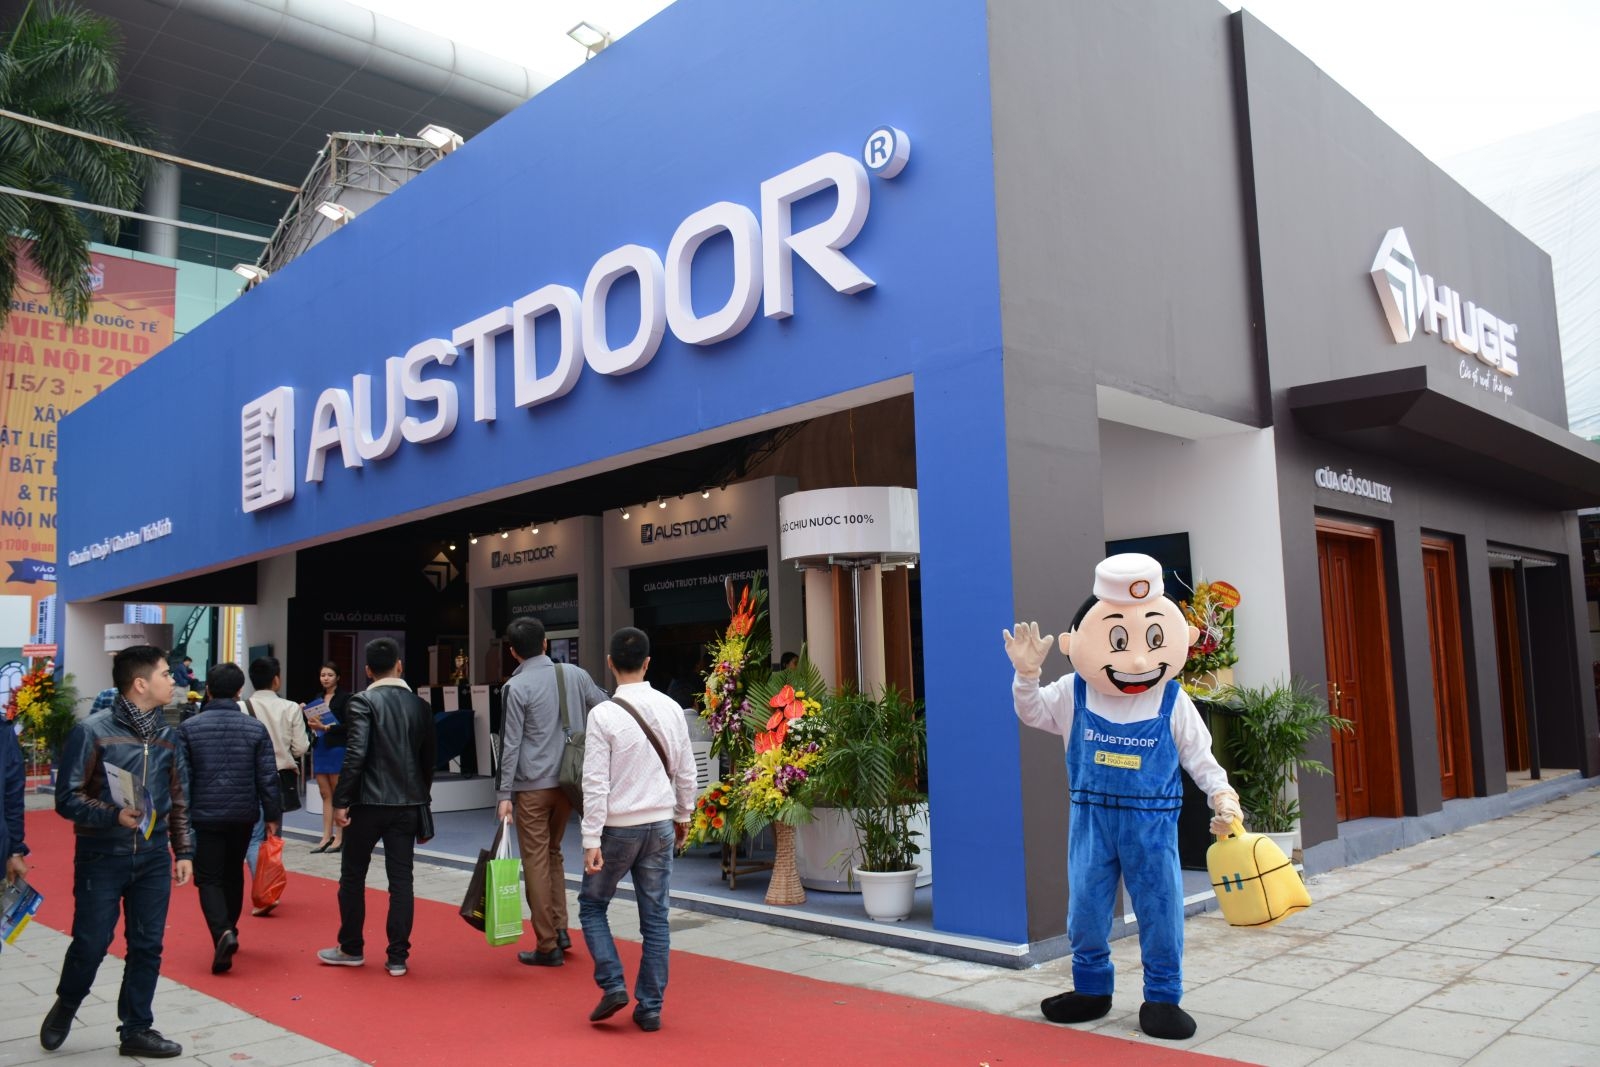 Austlock - Giải pháp khoá thông minh chống cạy cửa cuốn Austdoor giá ưu đãi 2.800.000vnđ/bộ